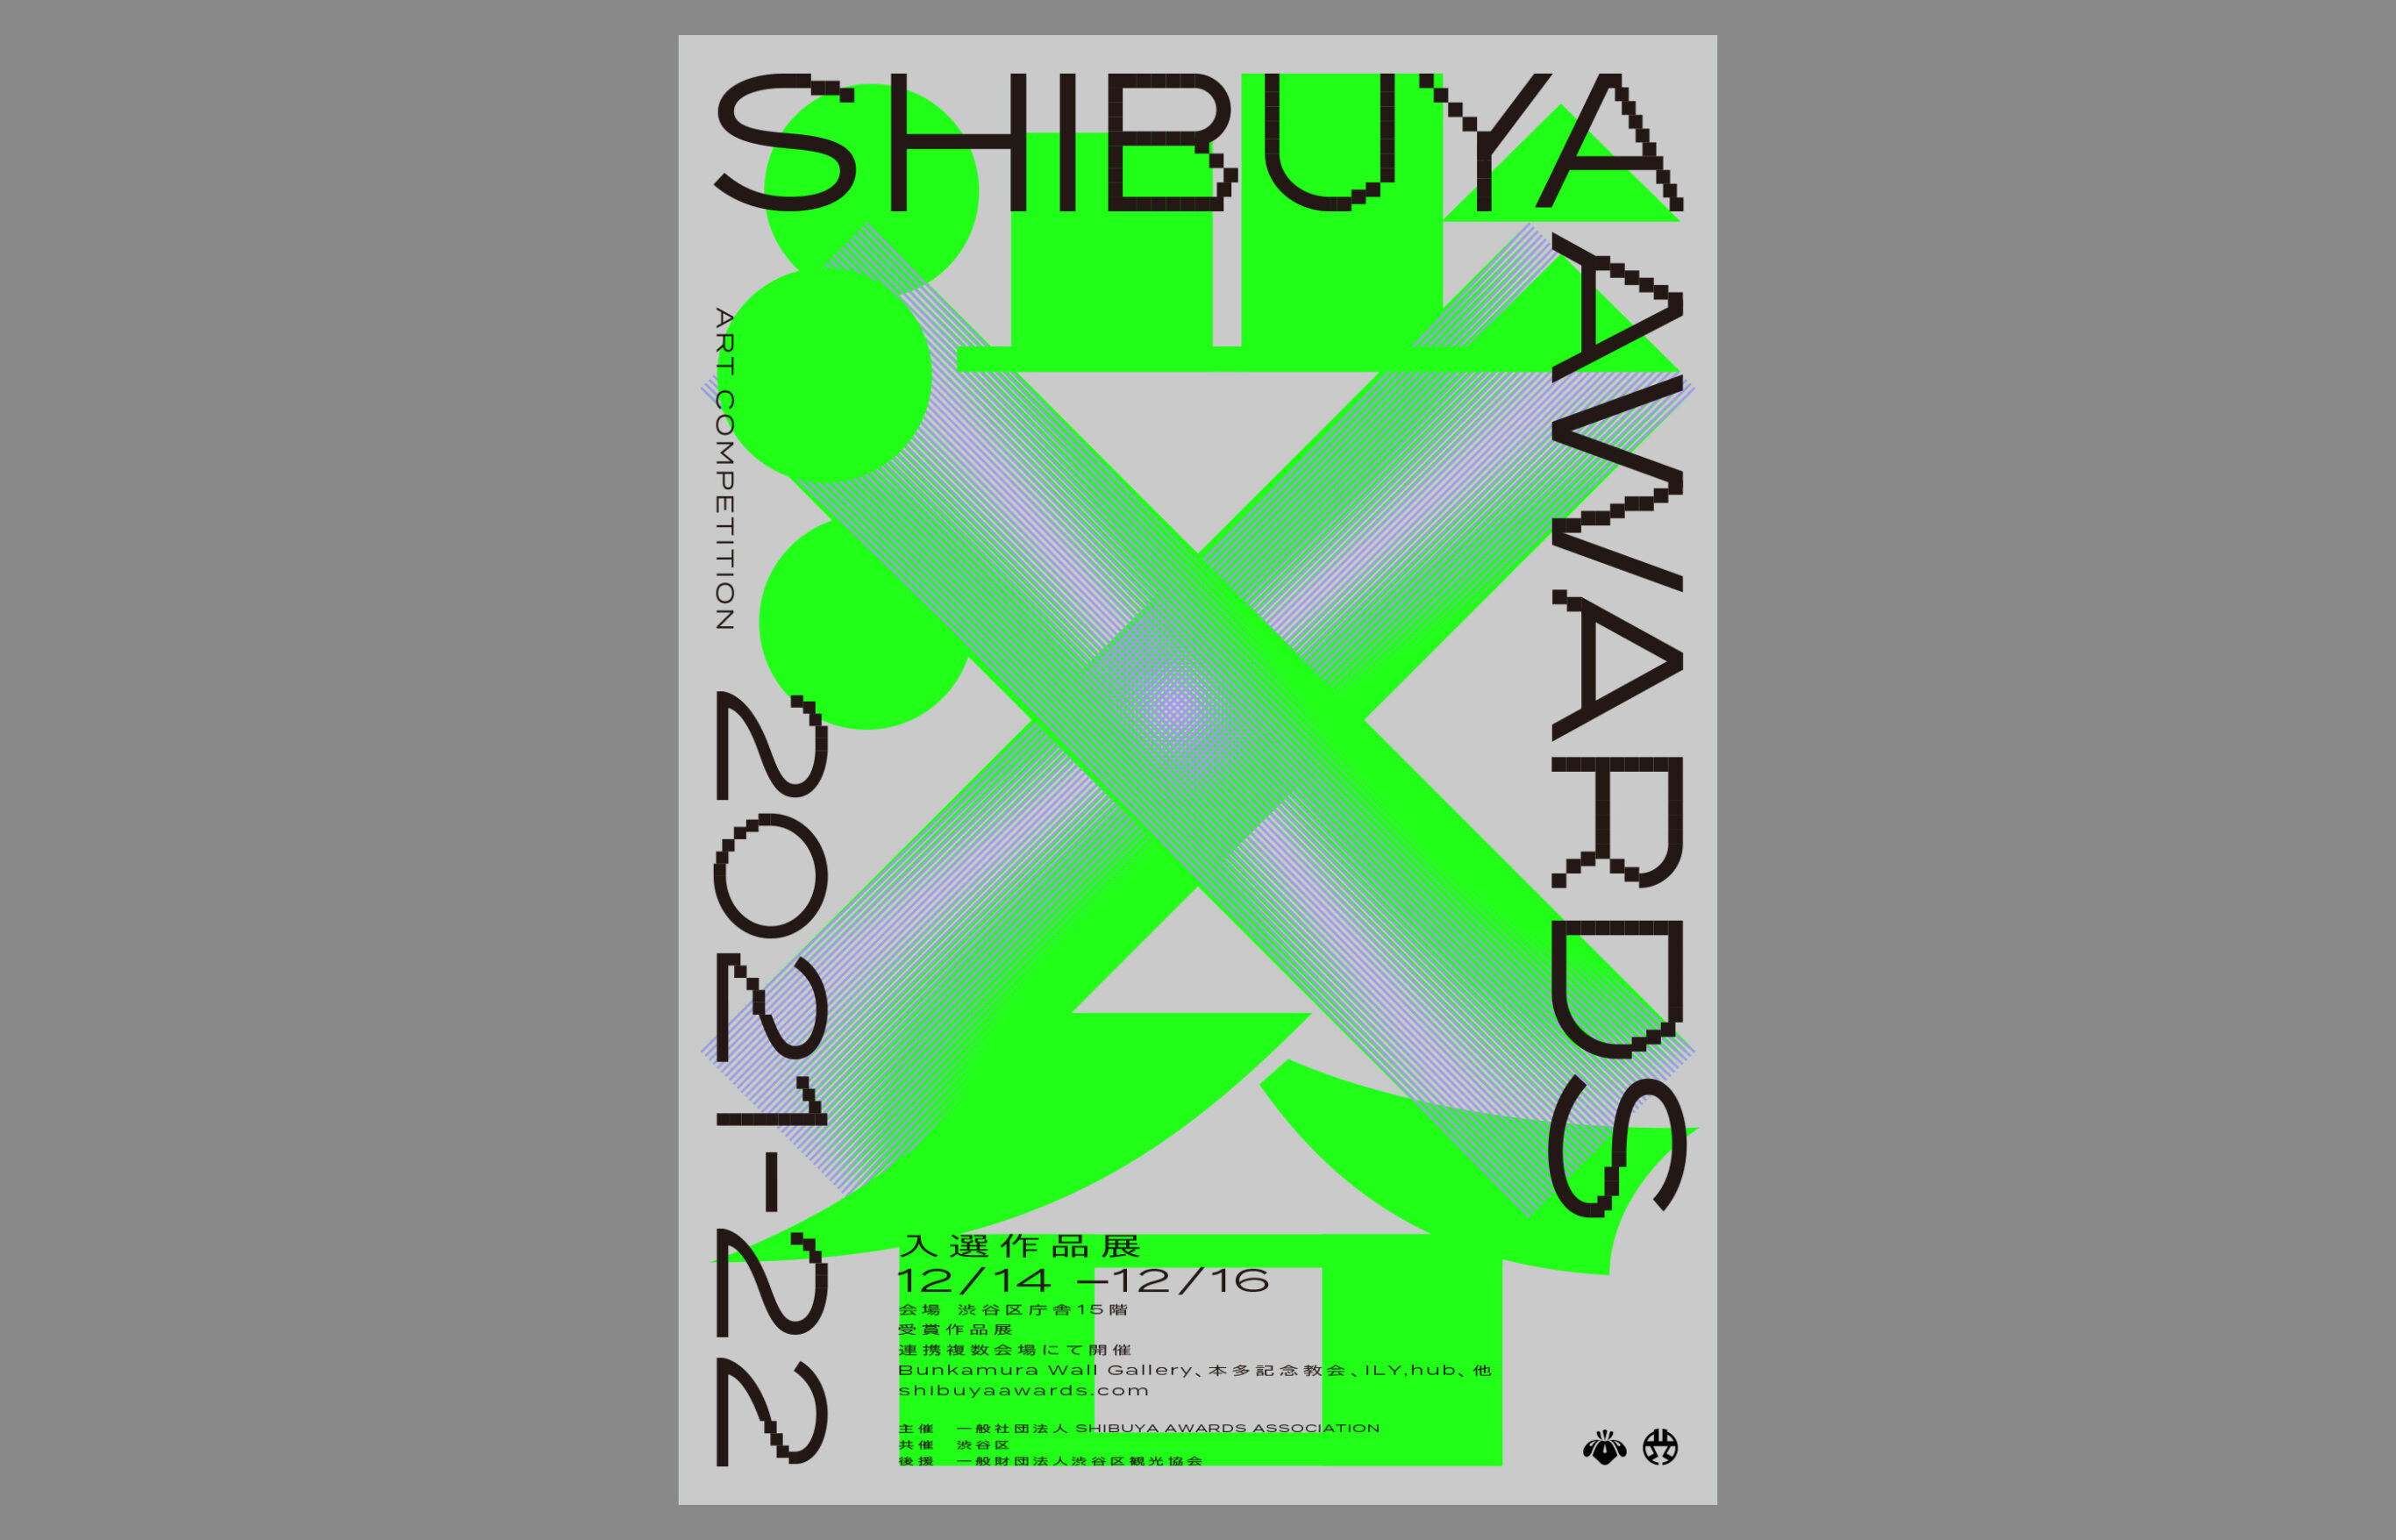 SHIBUYA AWARDS 2021